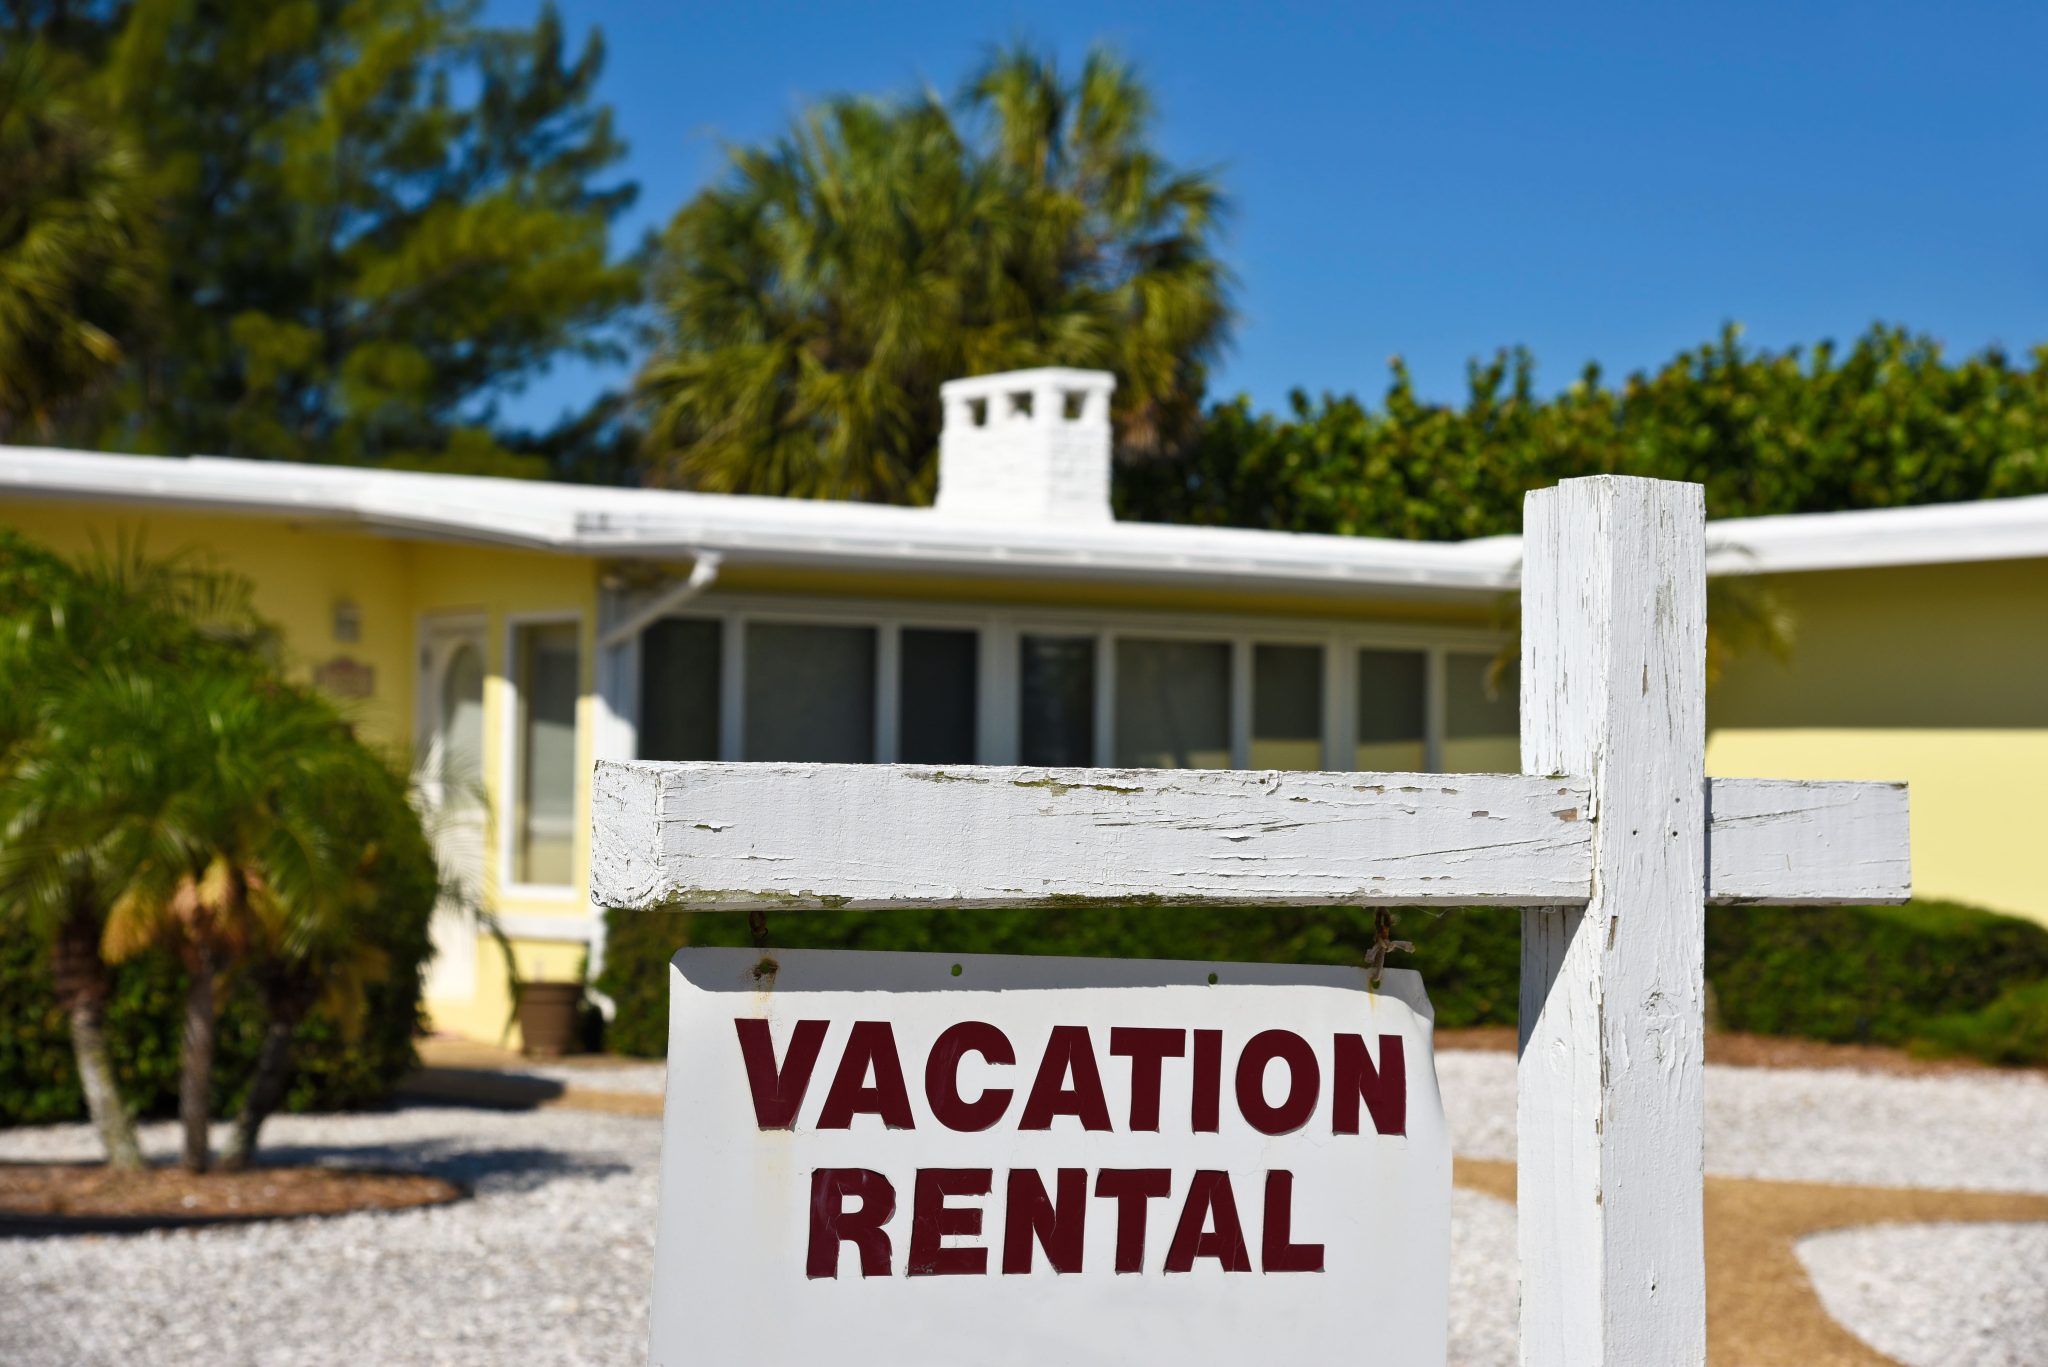 injury at short term vacation rental property